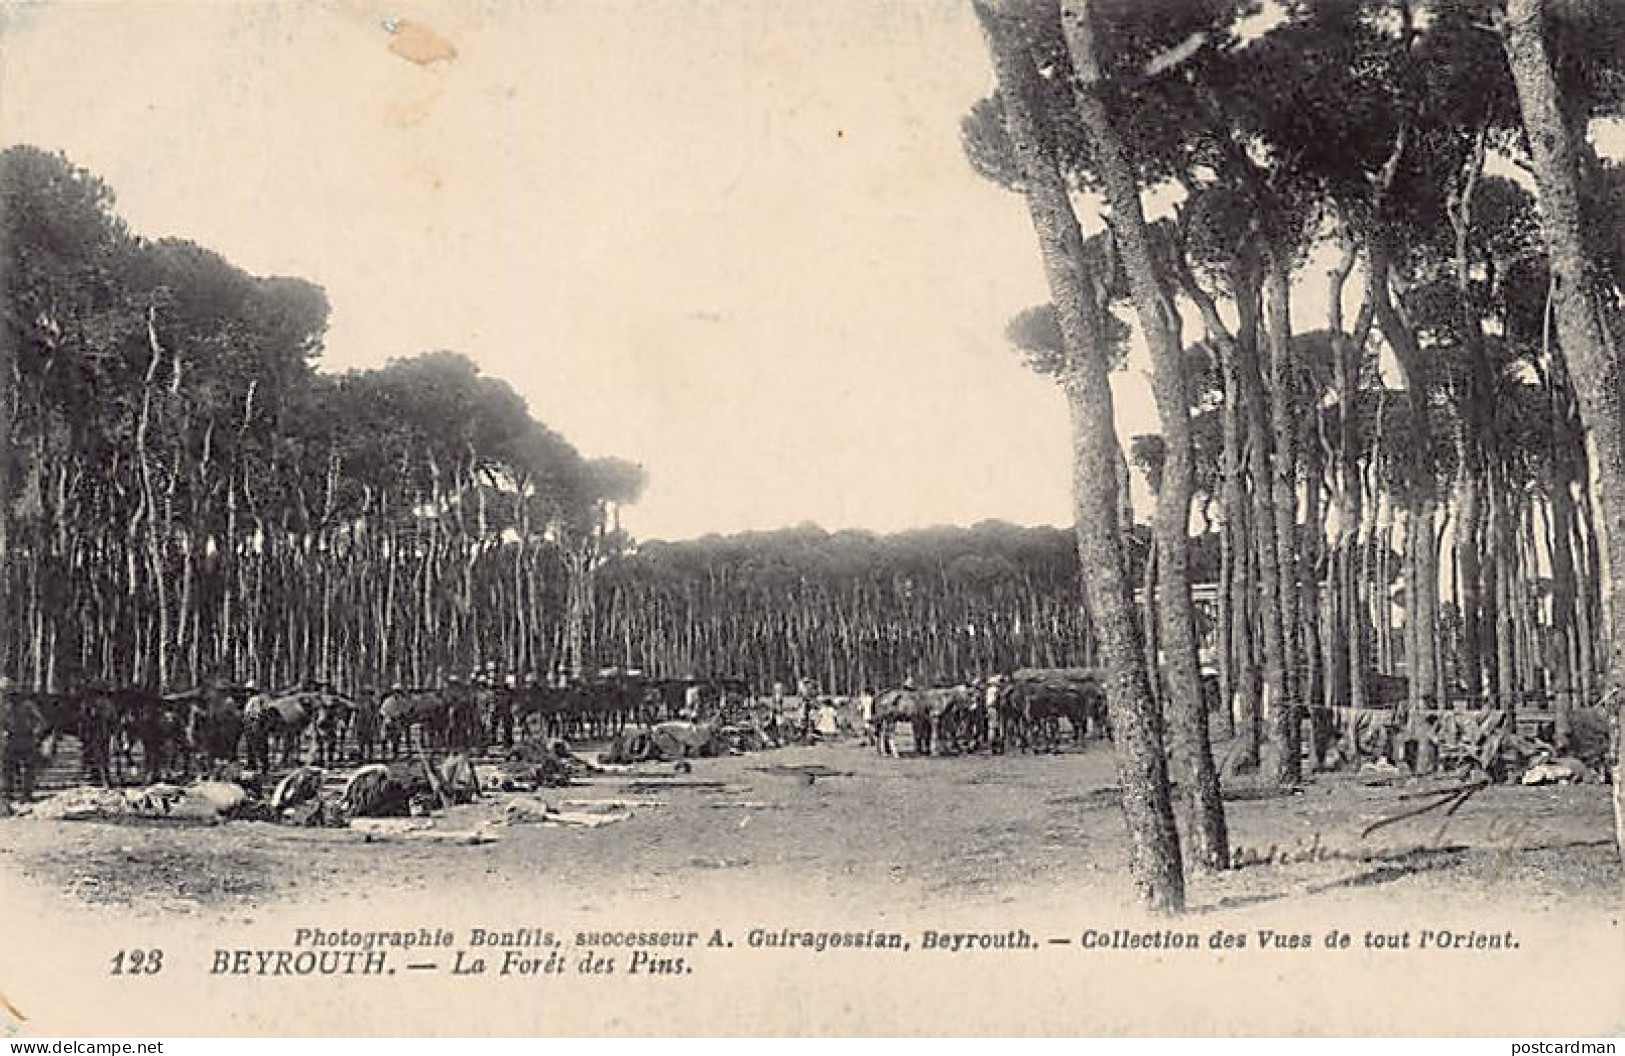 Liban - BEYROUTH - La Forêt De Spins - Camp Militaire - Ed. Photographie Bonfils, Successeur A. Guiragossian 123 - Líbano